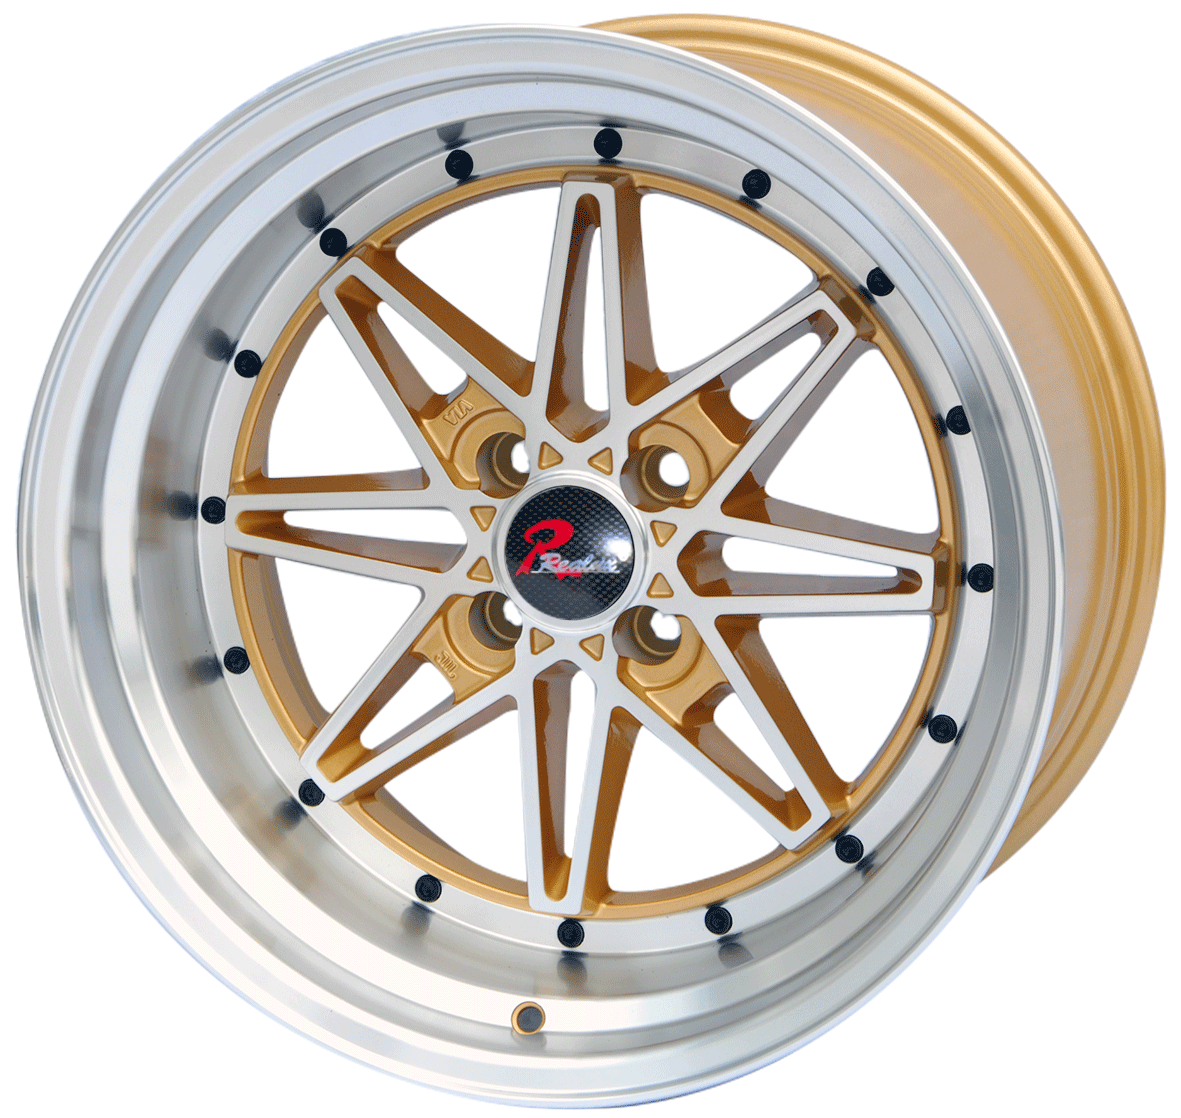 14×5.5 inch gold machine face/machine lip　wheel rim